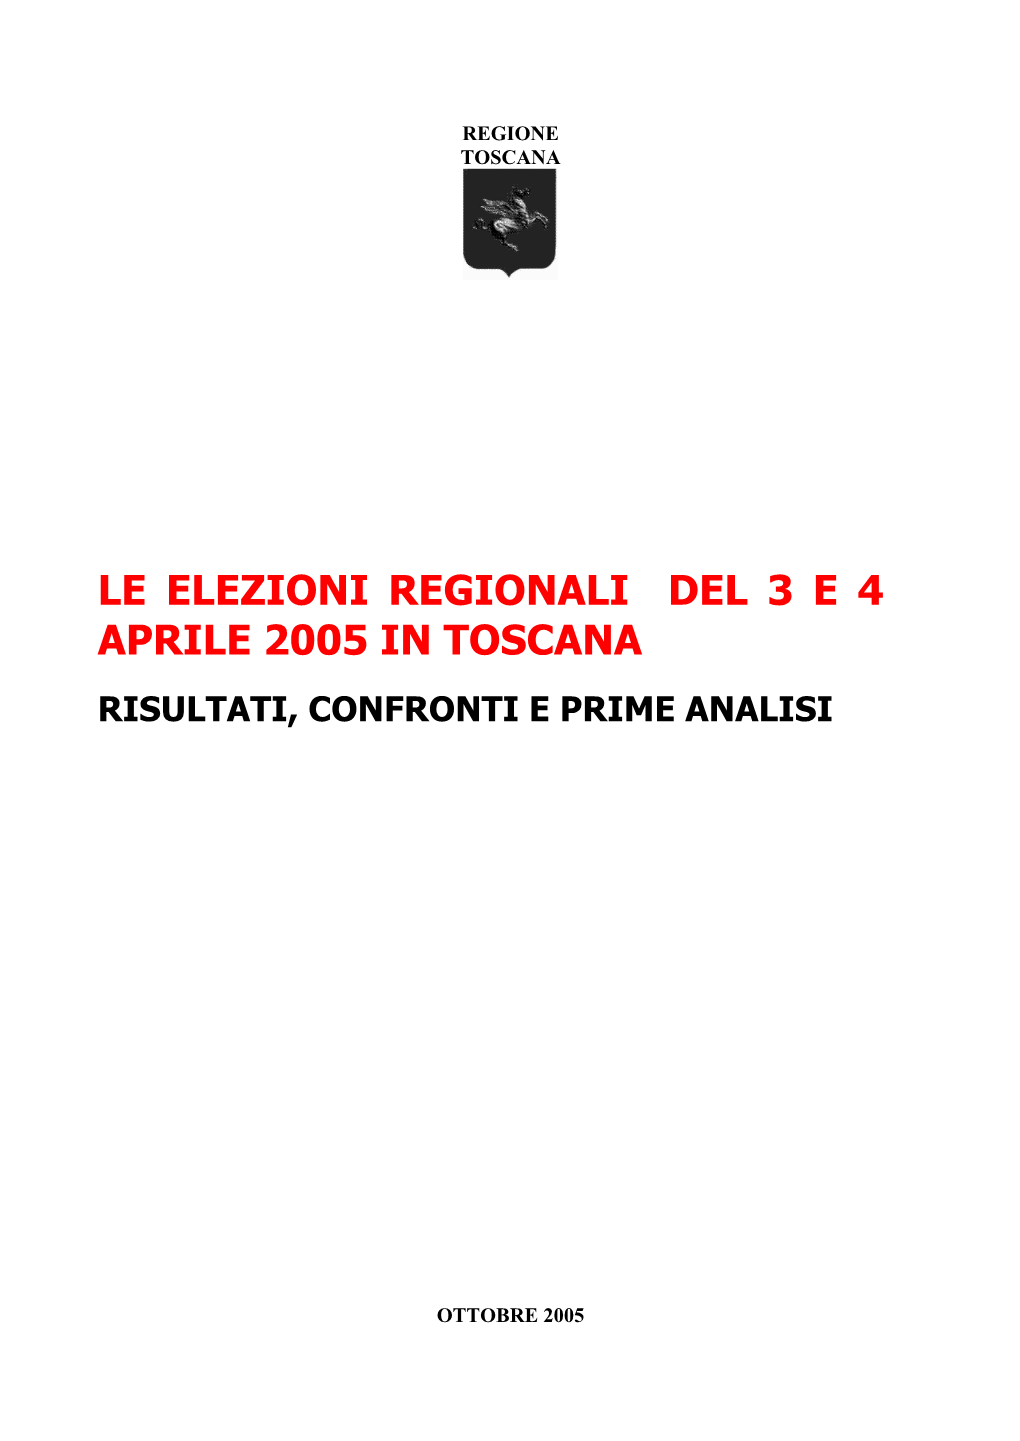 Le Elezioni Regionali Del 3 E 4 Aprile 2005 in Toscana